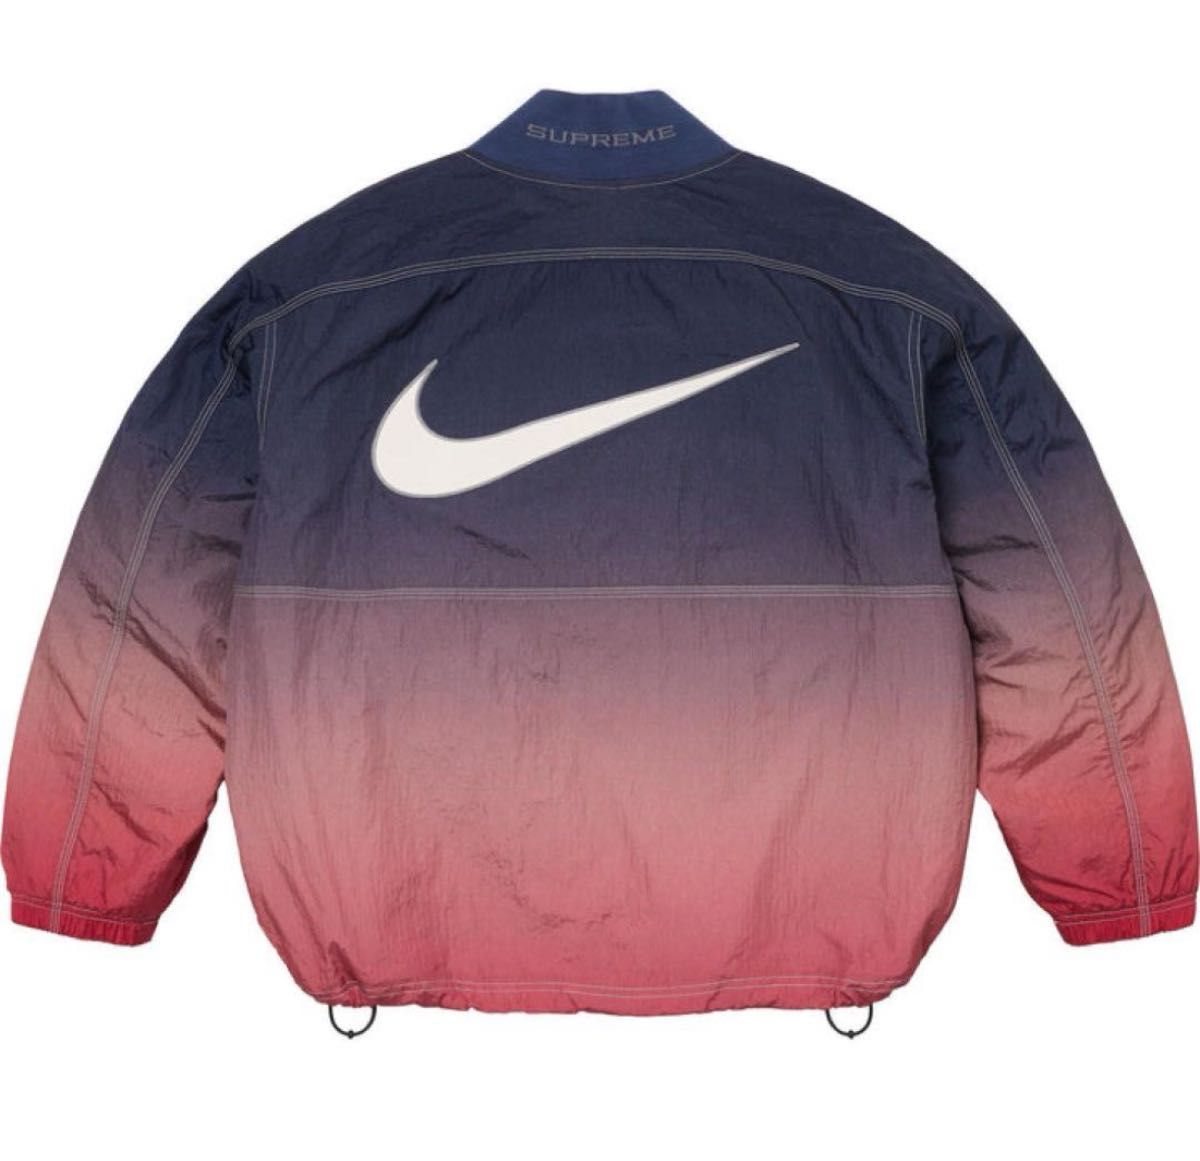 Supreme Nike Ripstop Pullover Multicolor